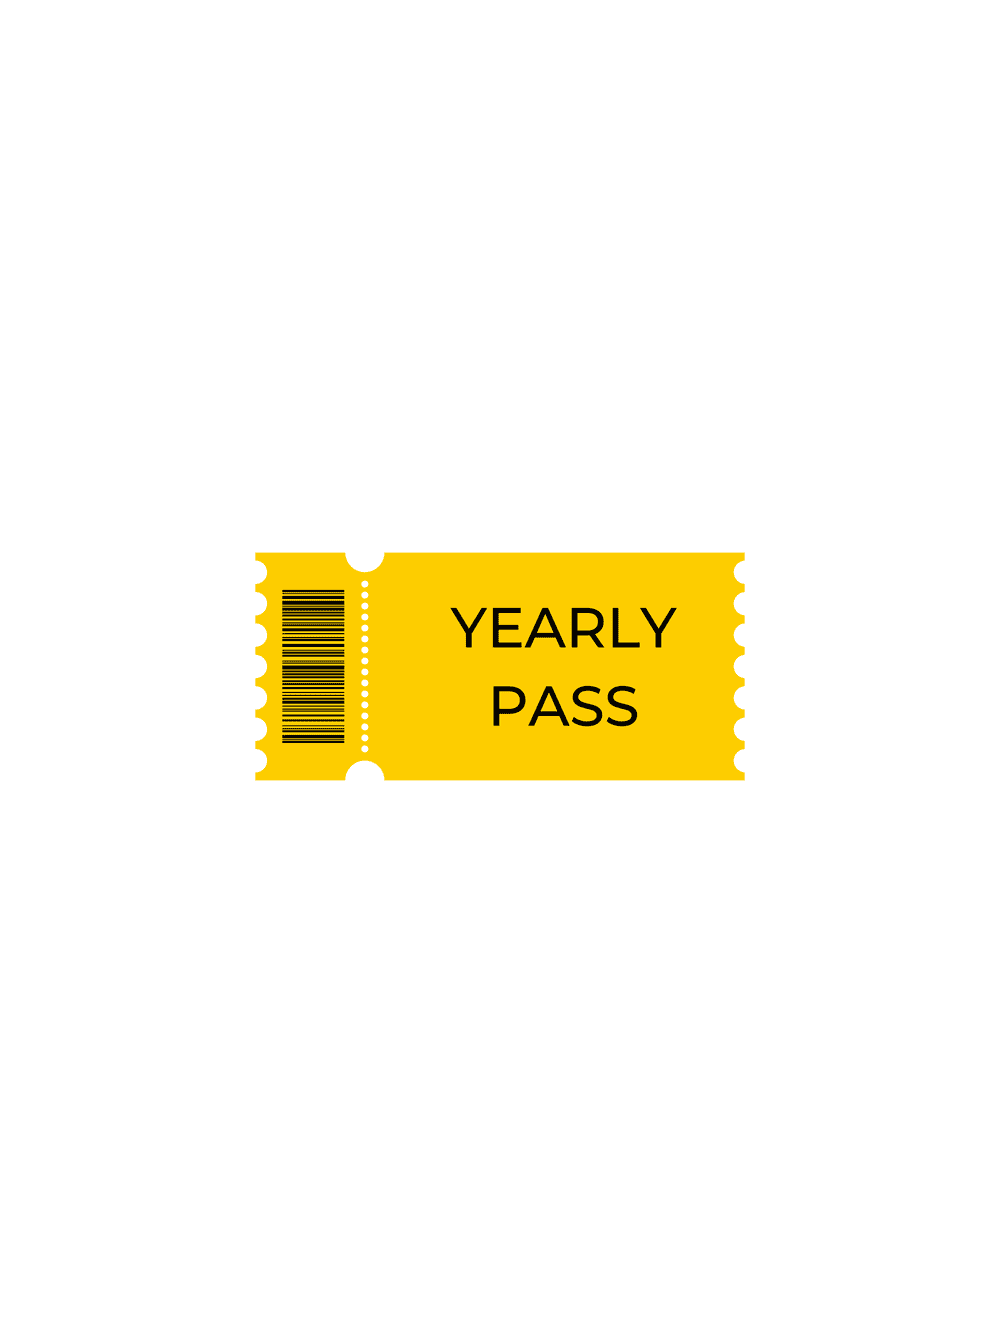 Yearly pass